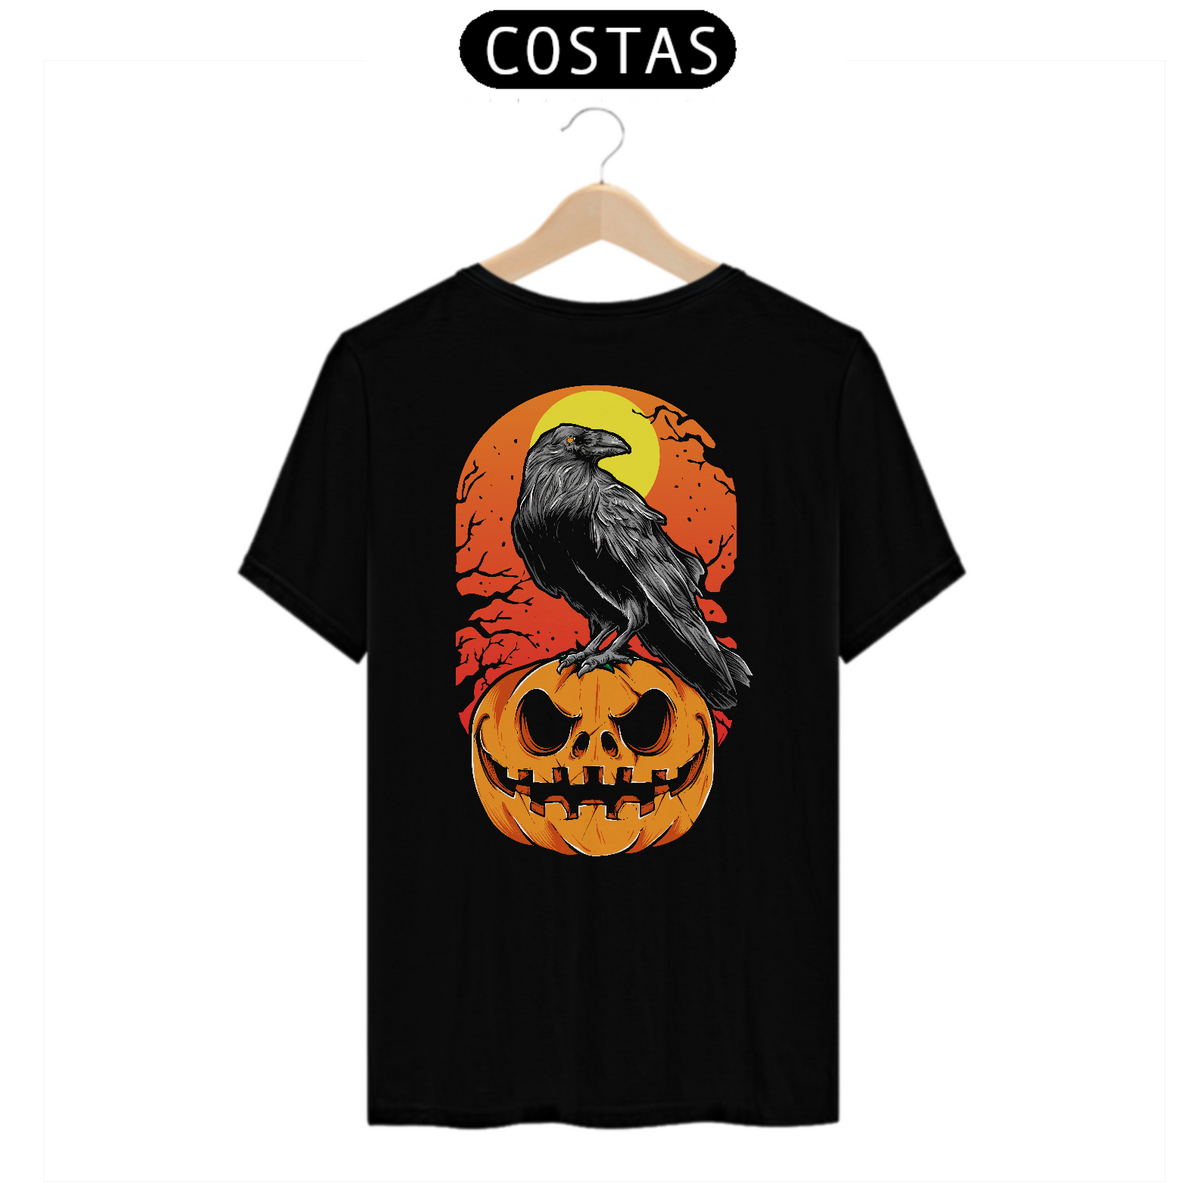 Nome do produto: Camiseta o corvo